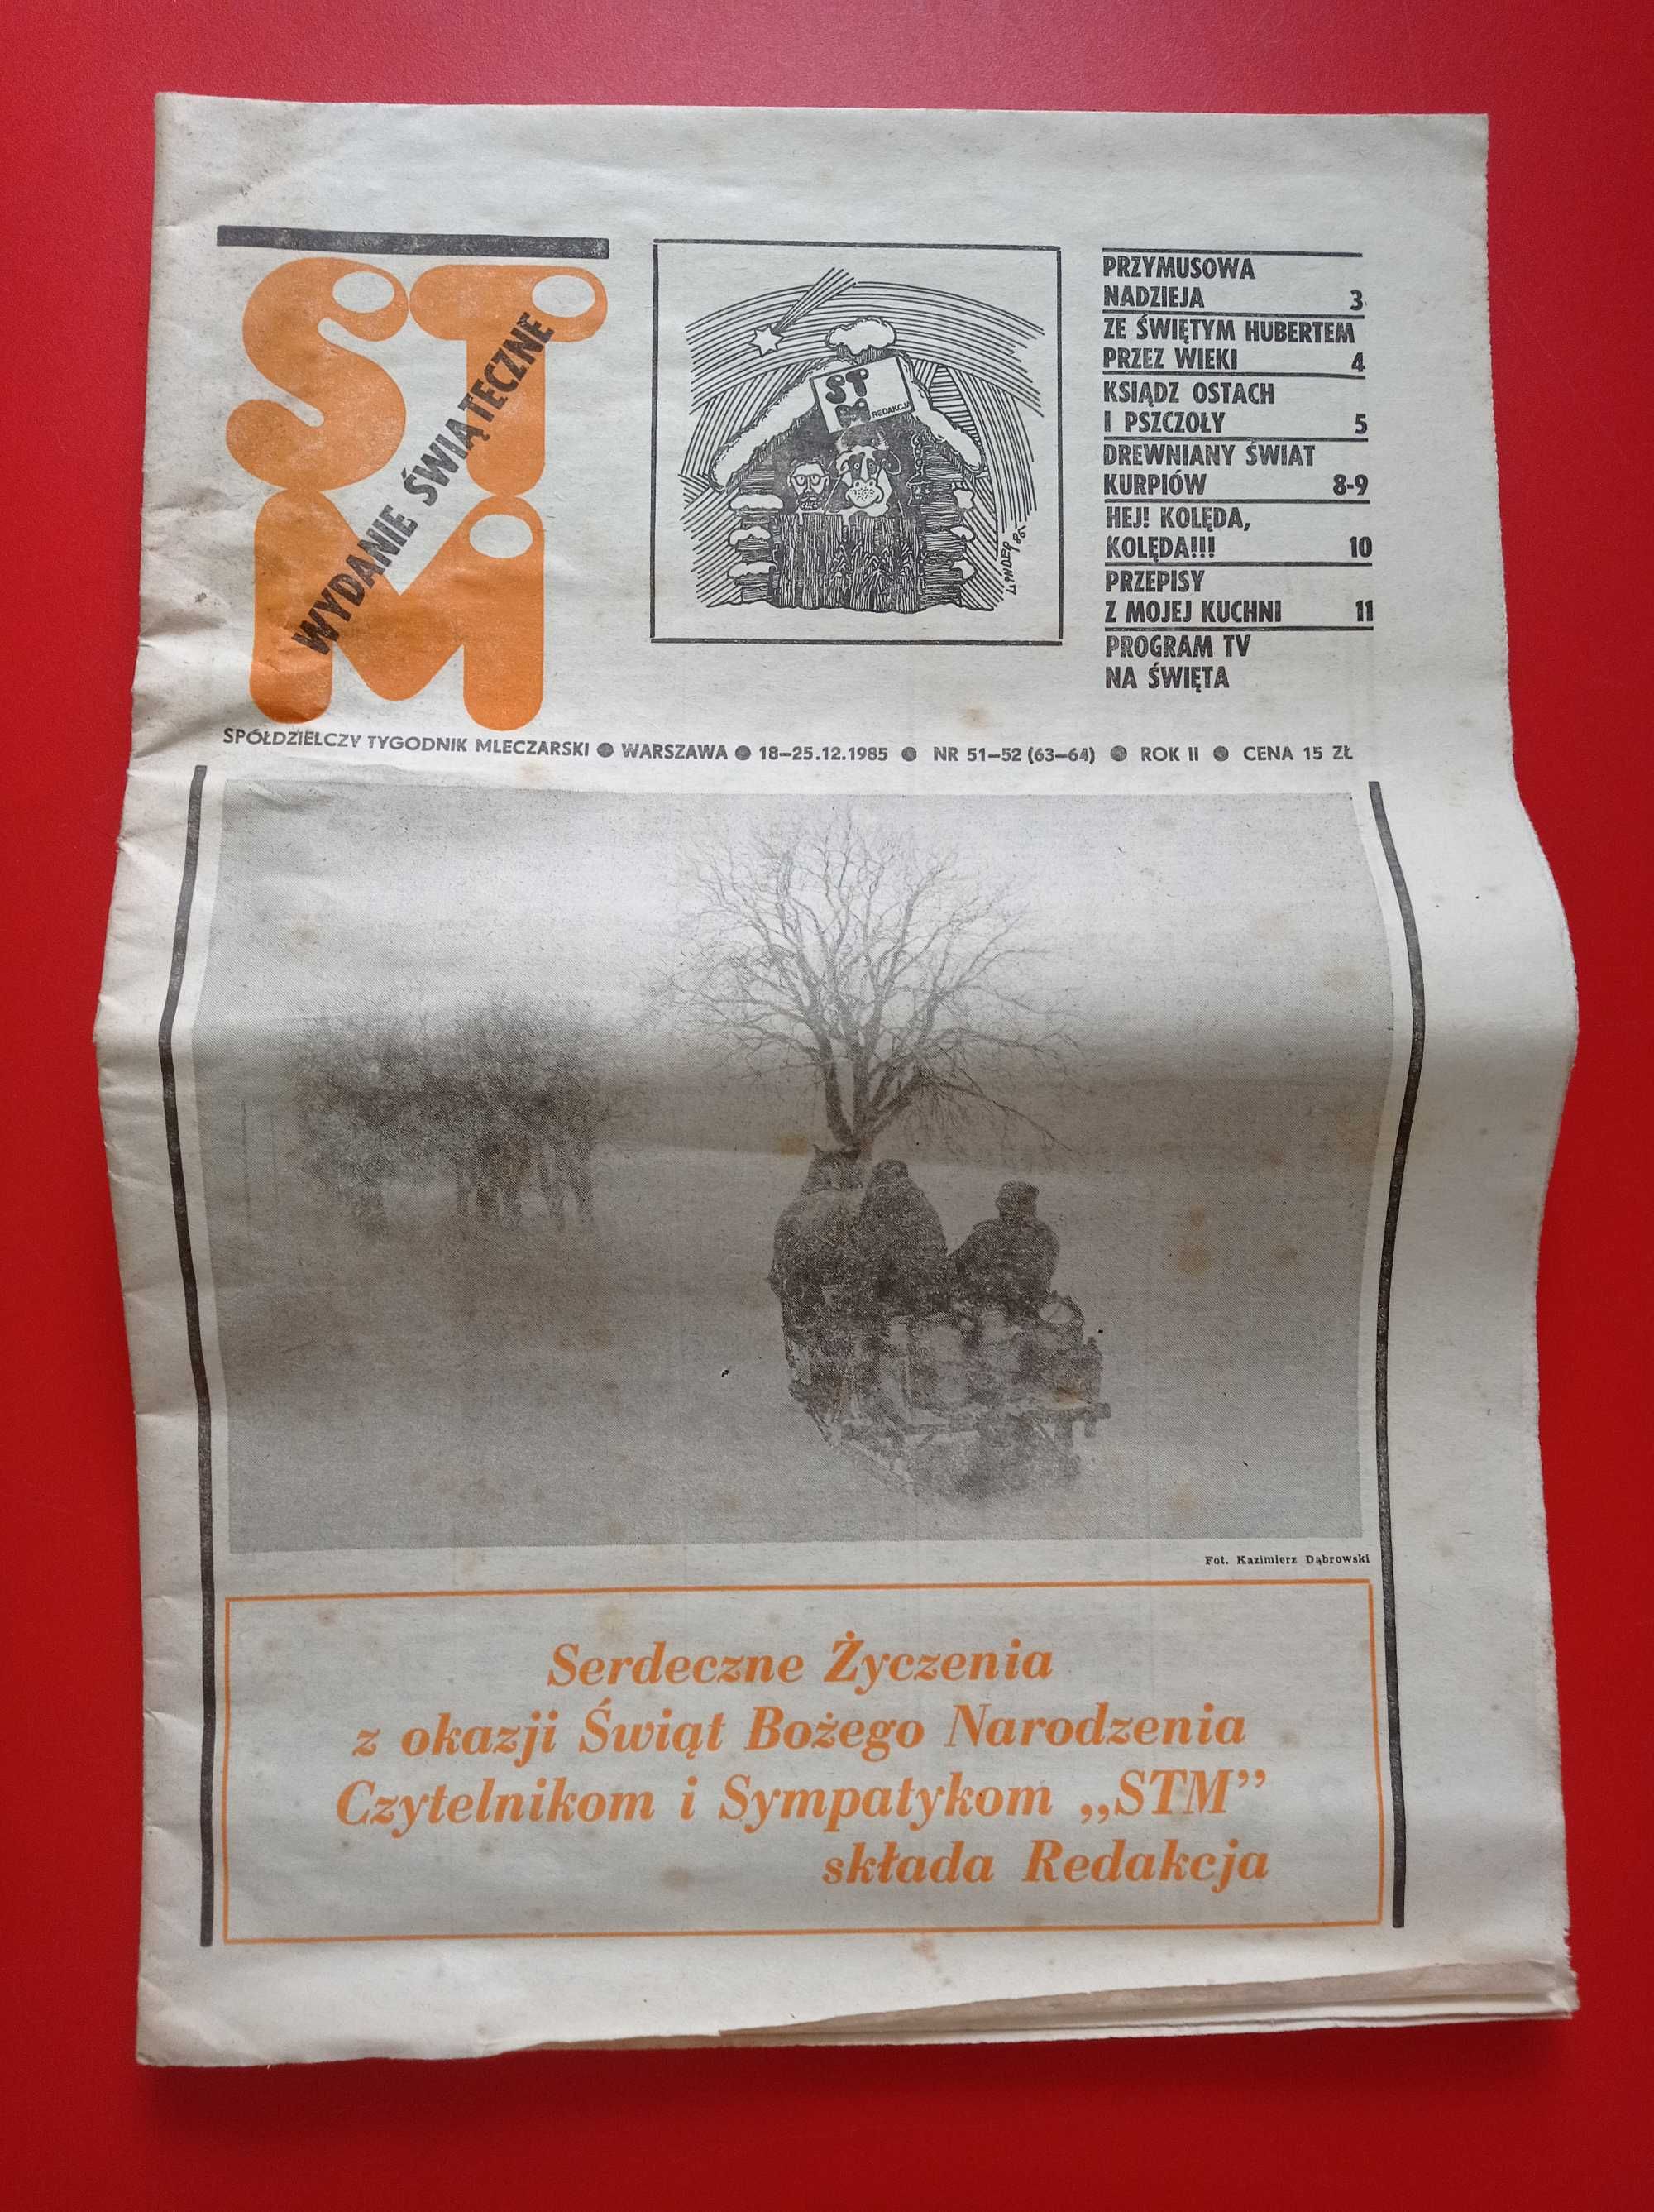 STM Spółdzielczy Tygodnik Mleczarski nr 51-52/1985